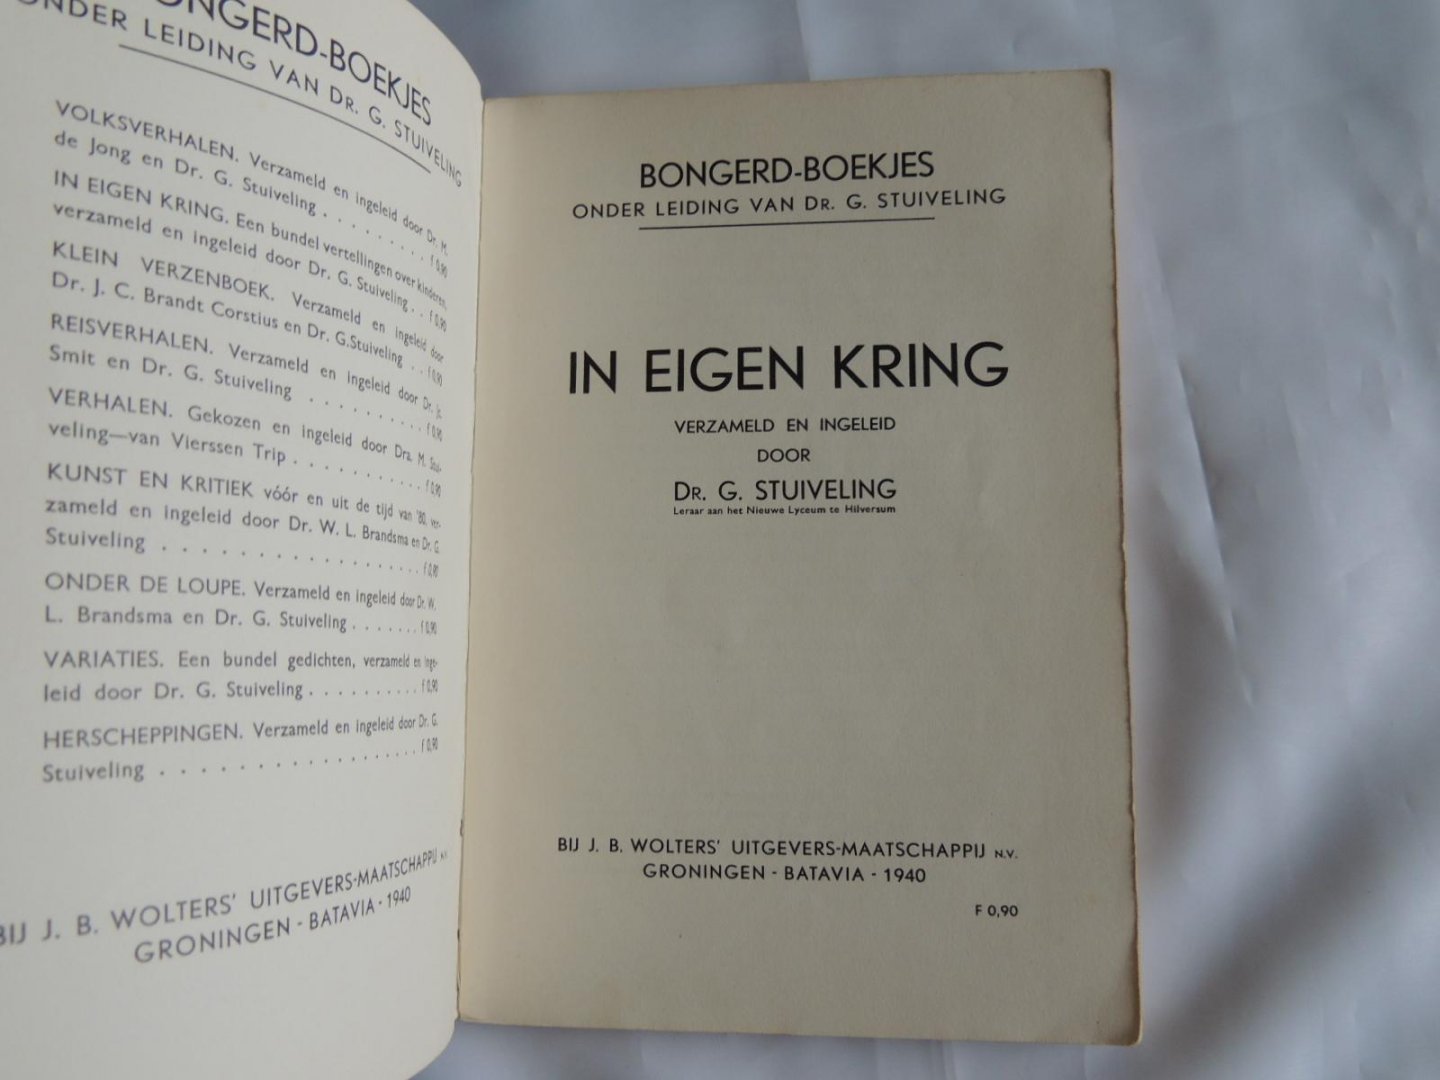 Brandt Corstius, dr. J.C. / Stuiveling, dr. G. (samenstellers). - Bongerd Boekjes --- In eigen kring en Klein verzenboek. Verzameld en ingeleid door Dr. J.C. Brandt Corstius en Dr. G. Stuiveling